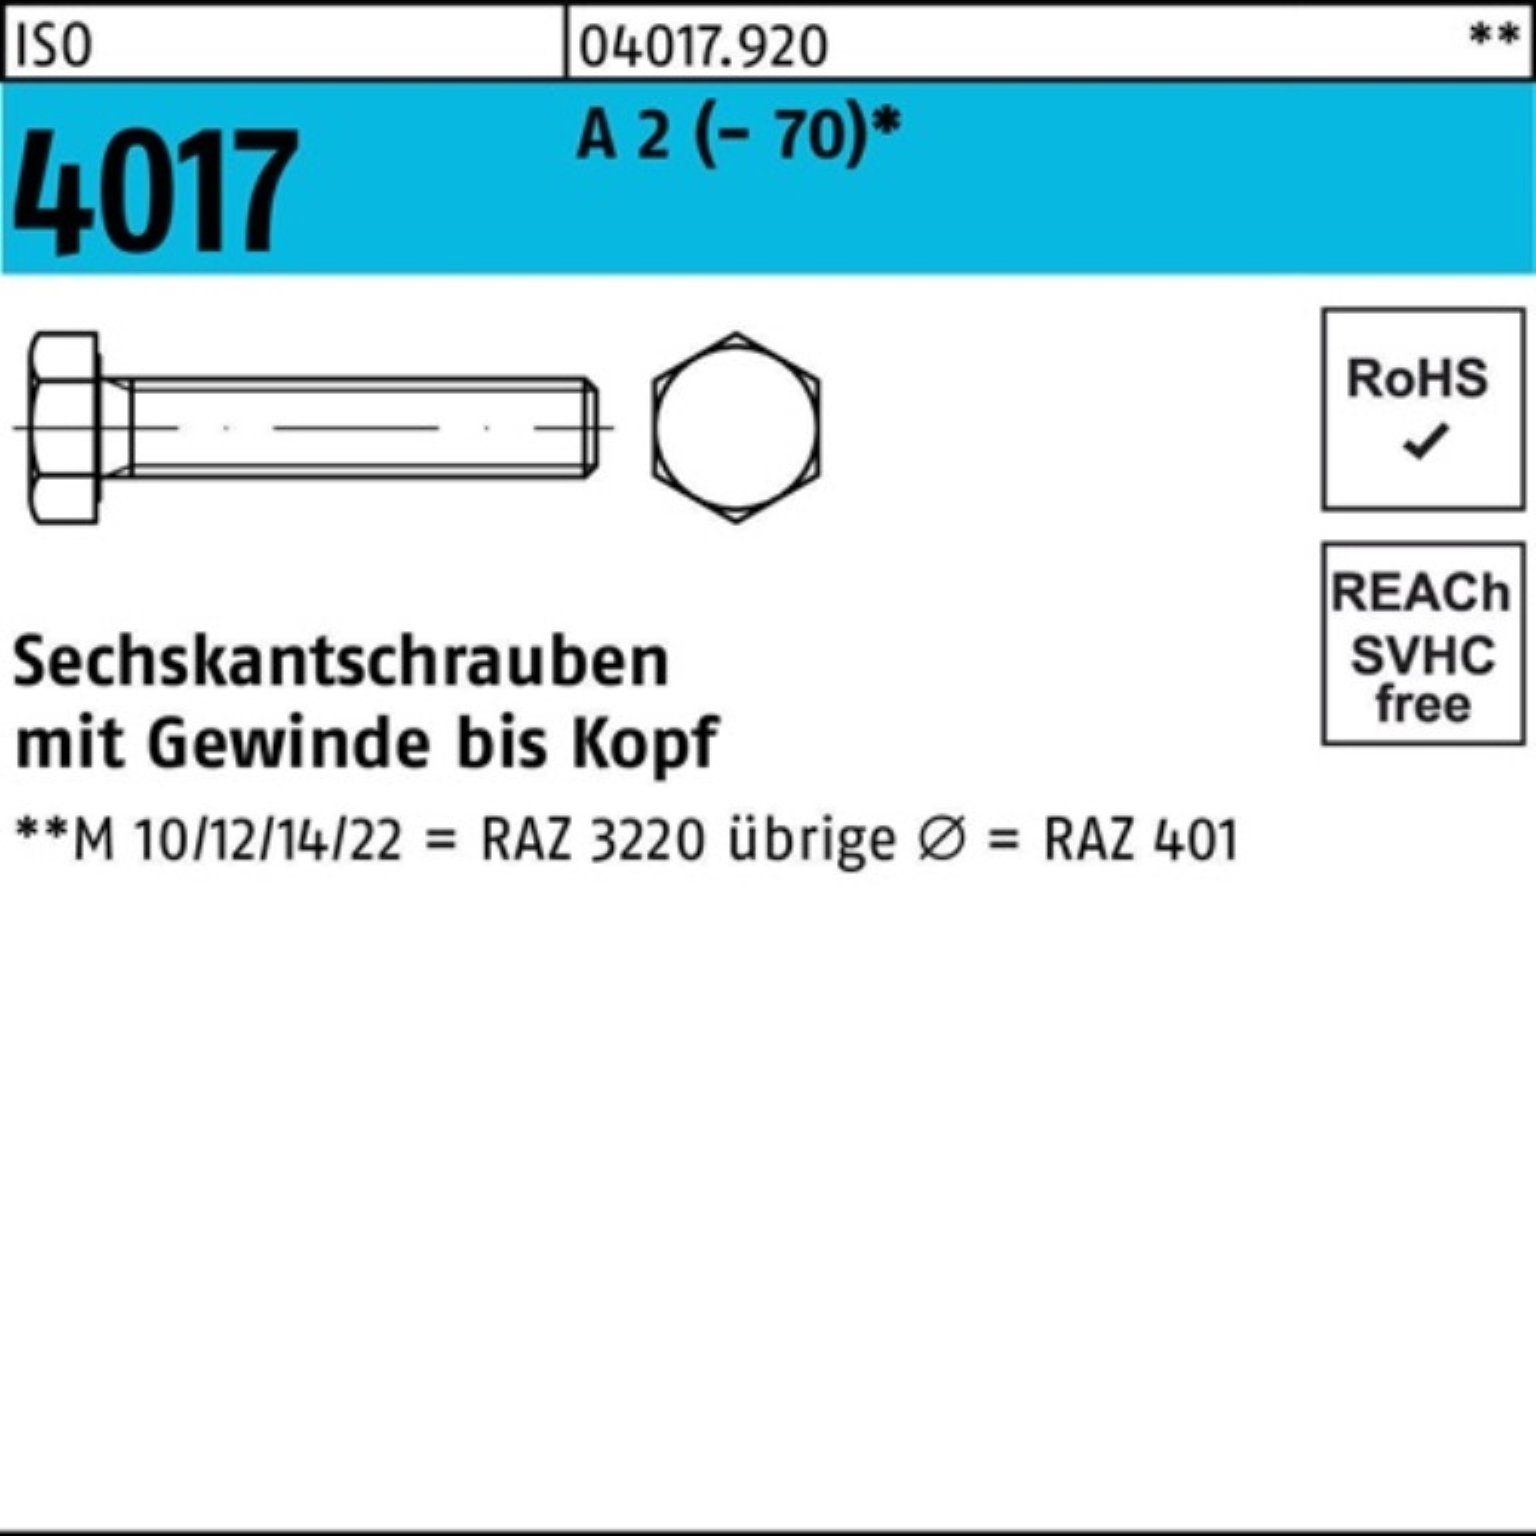 Bufab Sechskantschraube 200er Pack Sechskantschraube ISO 4017 VG M8x 50 A 2 (70) 200 Stück